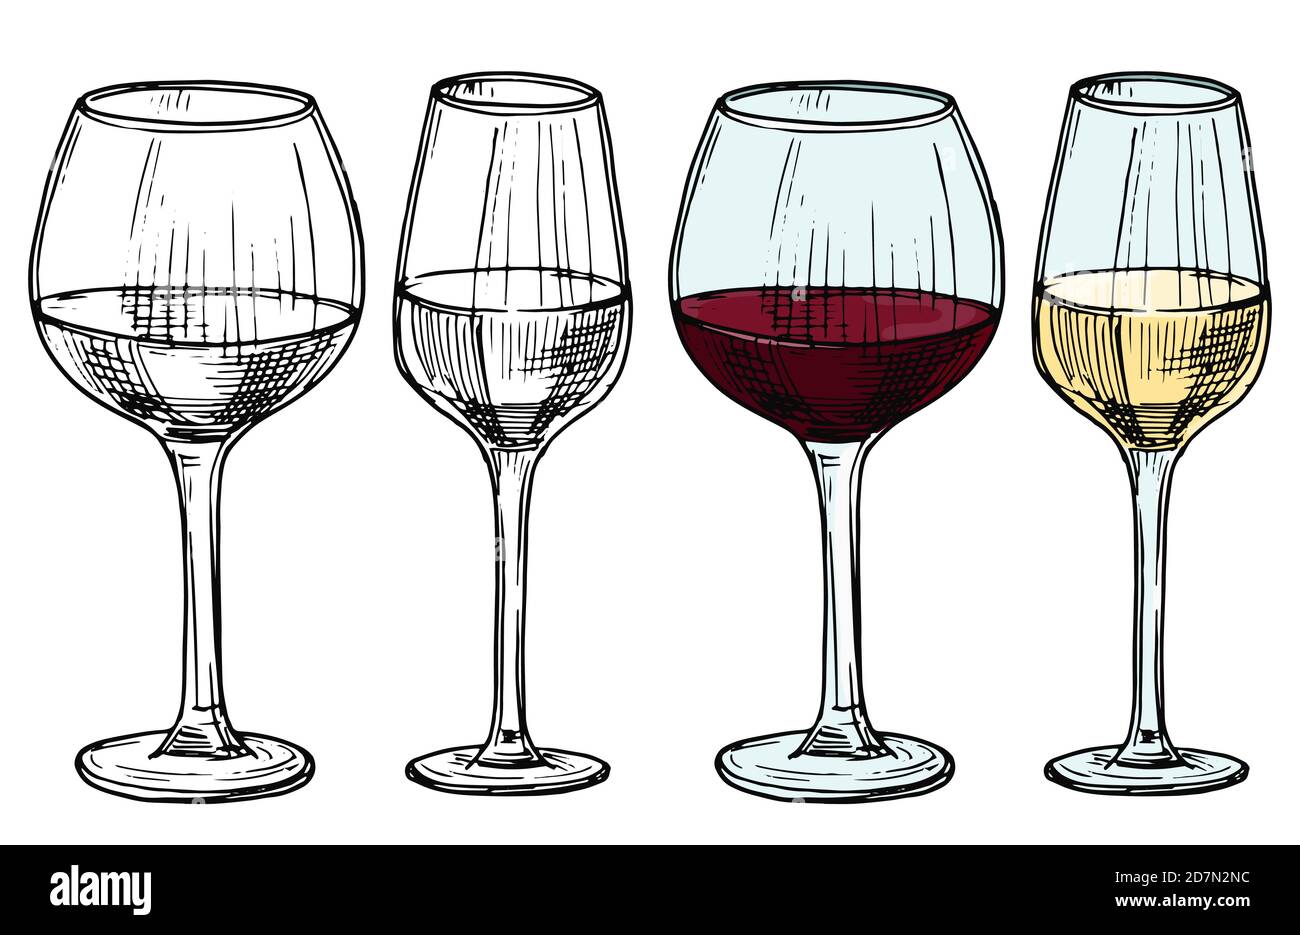 Handgezeichnete Gläser mit rot-weißem Wein-Vektor-Illustration. Alkohol weiß und rot trinken Wein, Skizze Getränk in Weinglas Stock Vektor